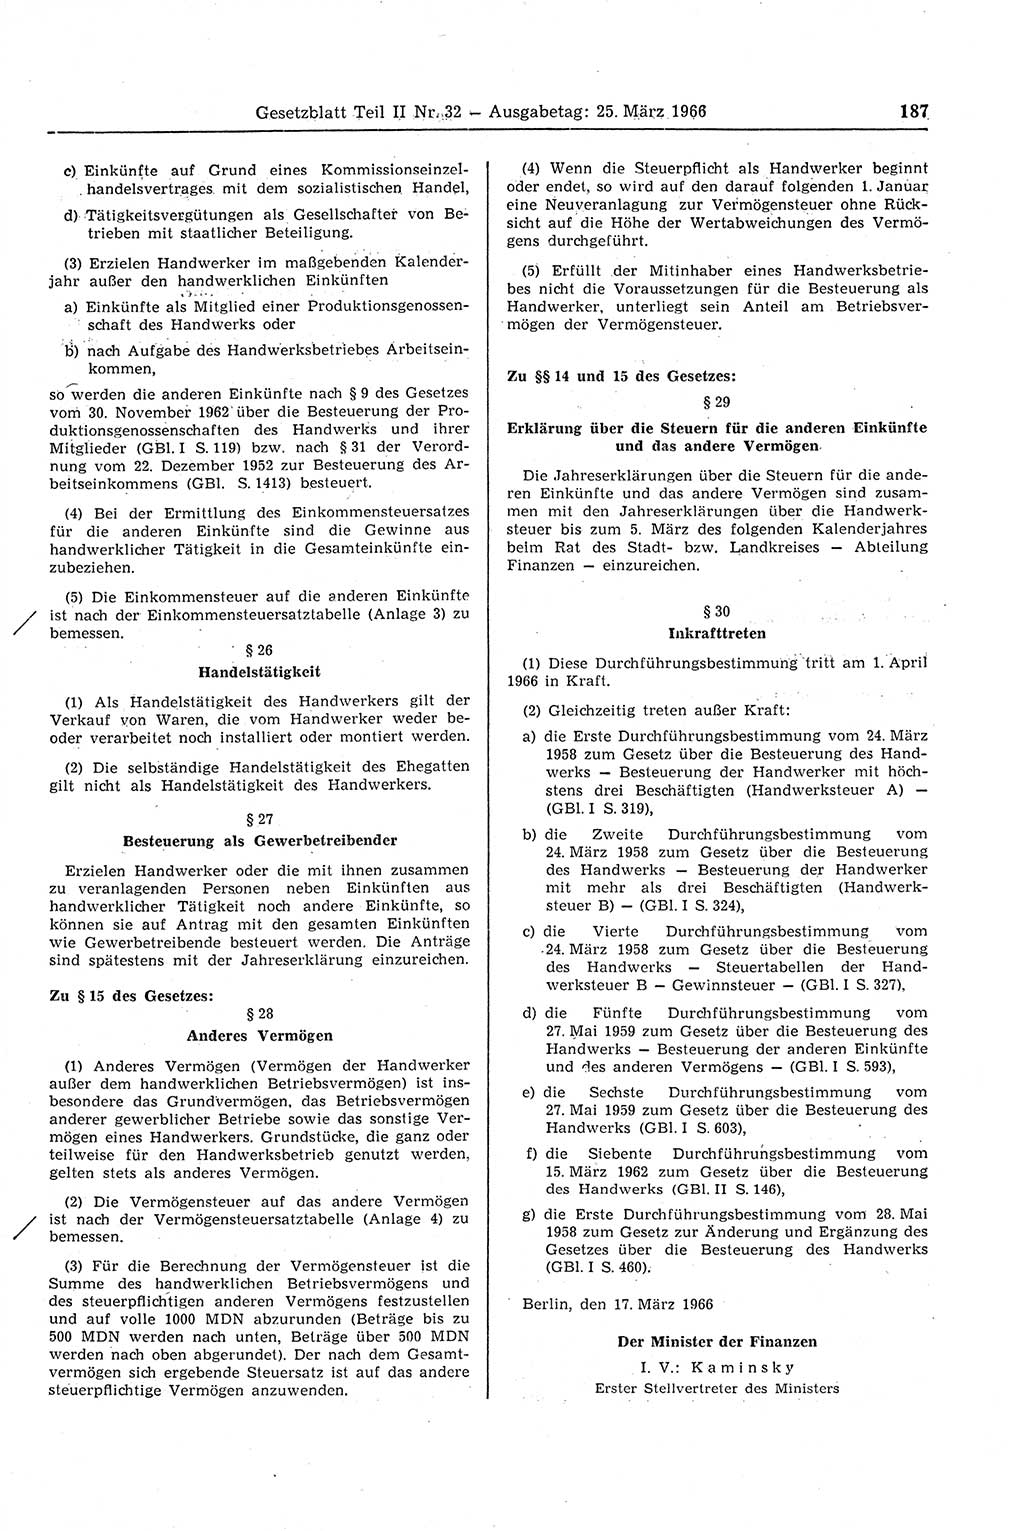 Gesetzblatt (GBl.) der Deutschen Demokratischen Republik (DDR) Teil ⅠⅠ 1966, Seite 187 (GBl. DDR ⅠⅠ 1966, S. 187)